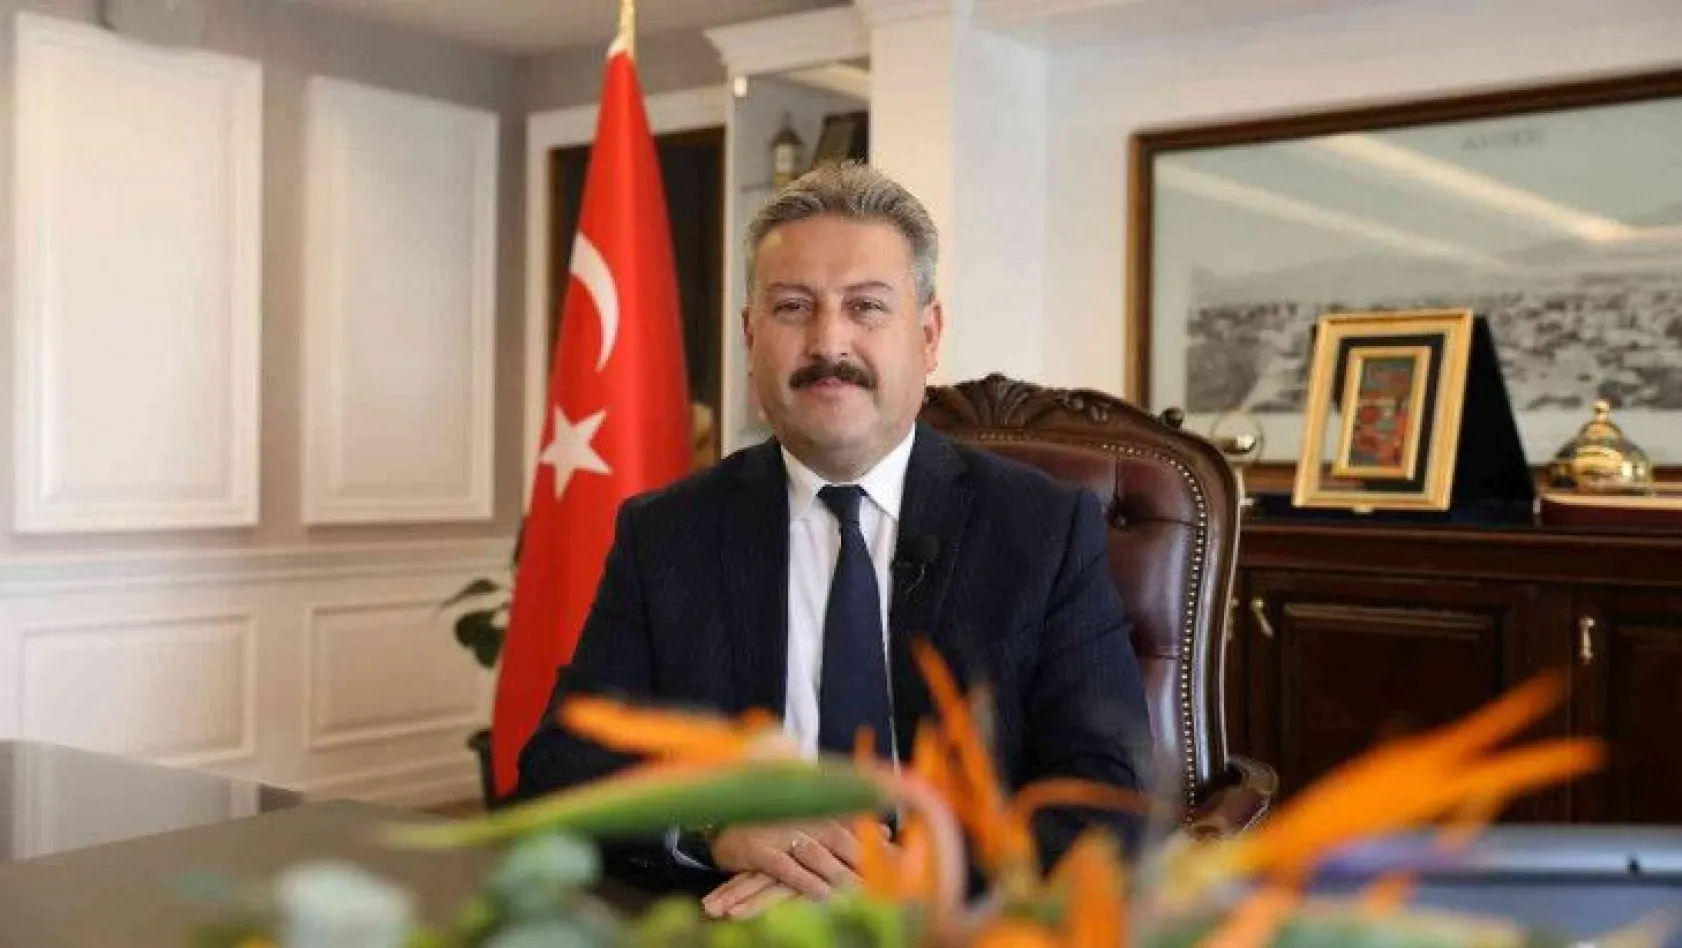 Palancıoğlu: Melikgazi 973 ilçe arasında 46. sırada yer aldı